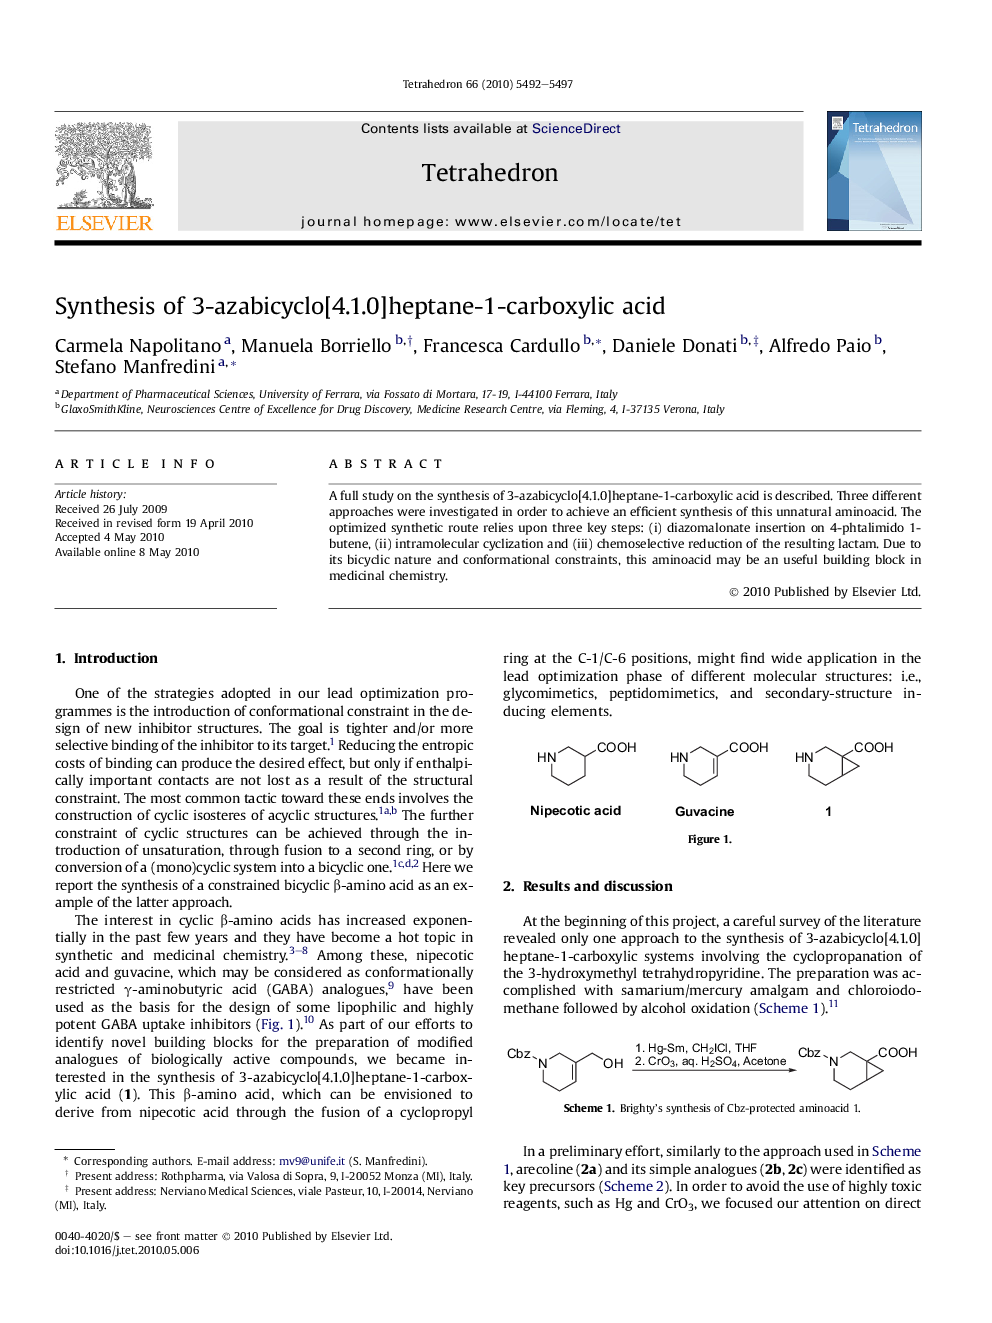 Synthesis of 3-azabicyclo[4.1.0]heptane-1-carboxylic acid